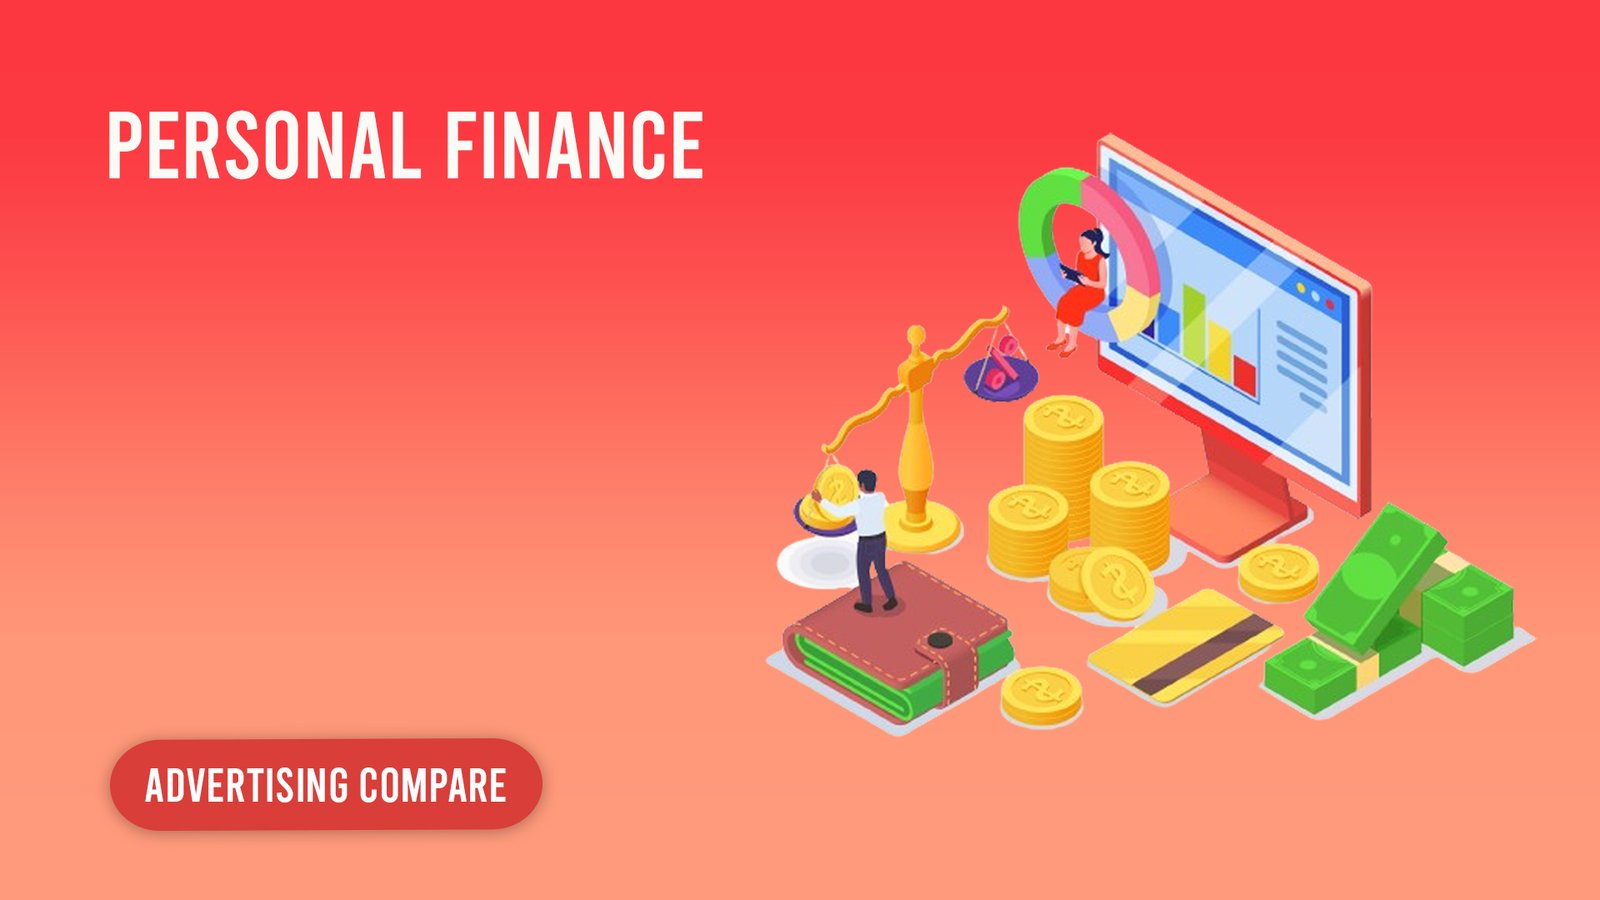 personal finance www.theadcompare.com